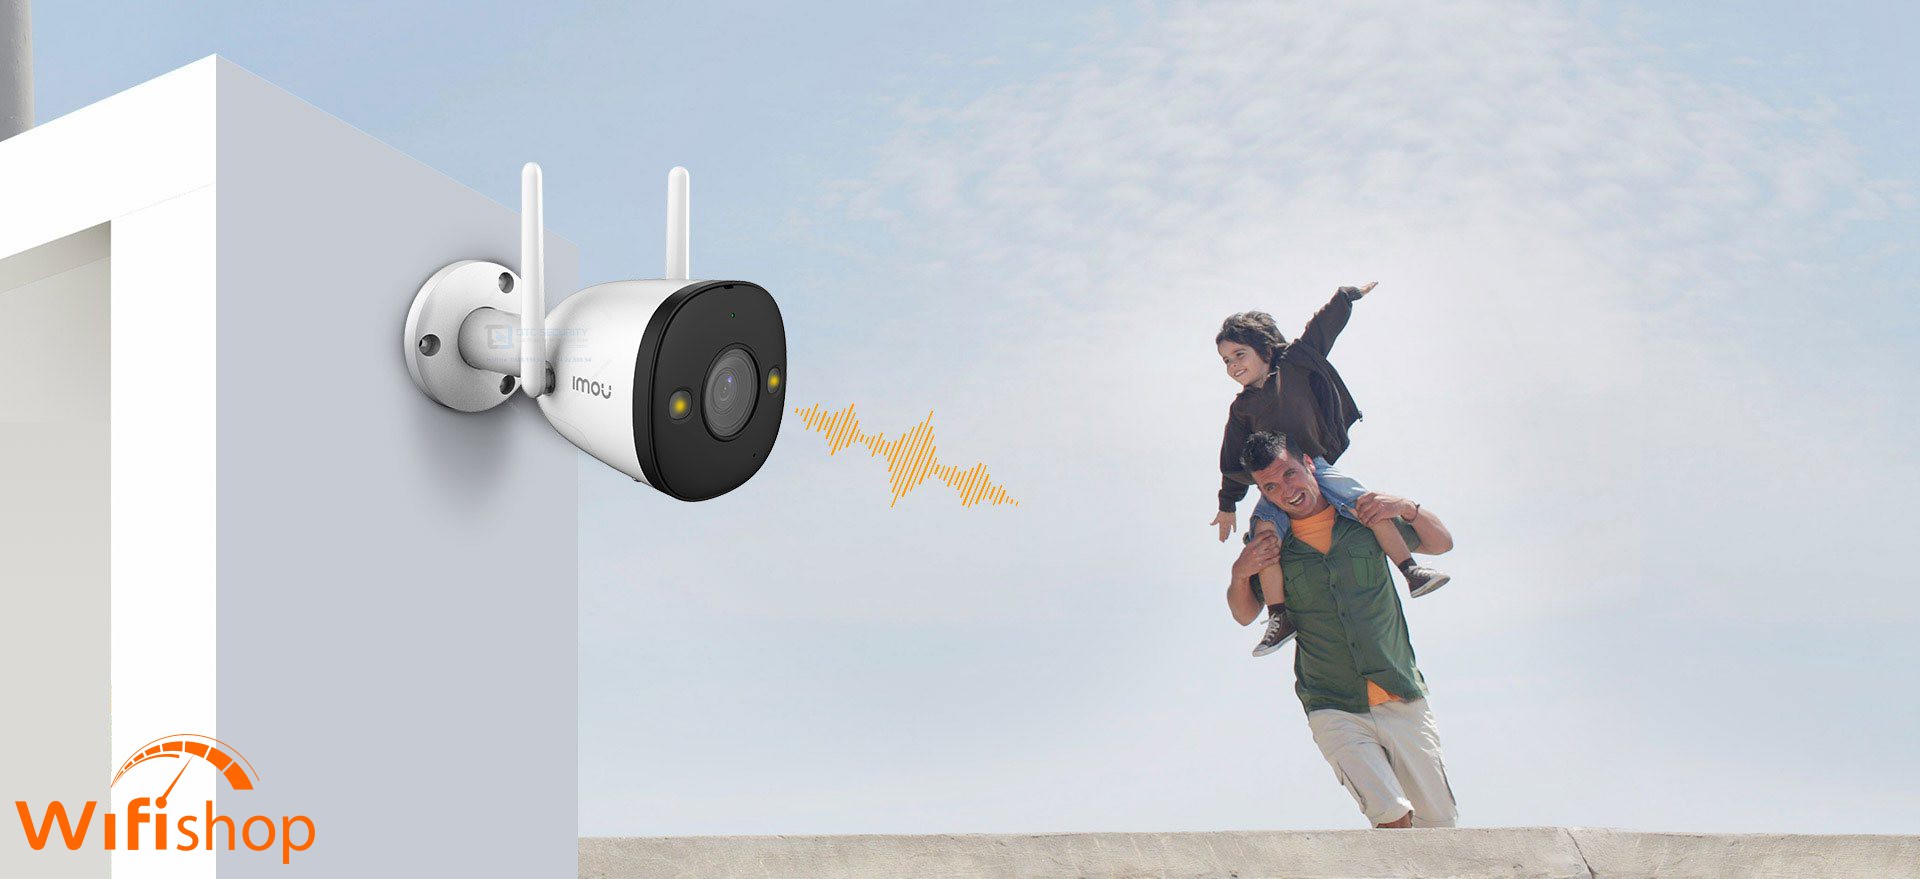 Thiết bị quan sát Camera Wifi 4MP IPC-F42FP-IMOU tích hợp đèn Spotlight